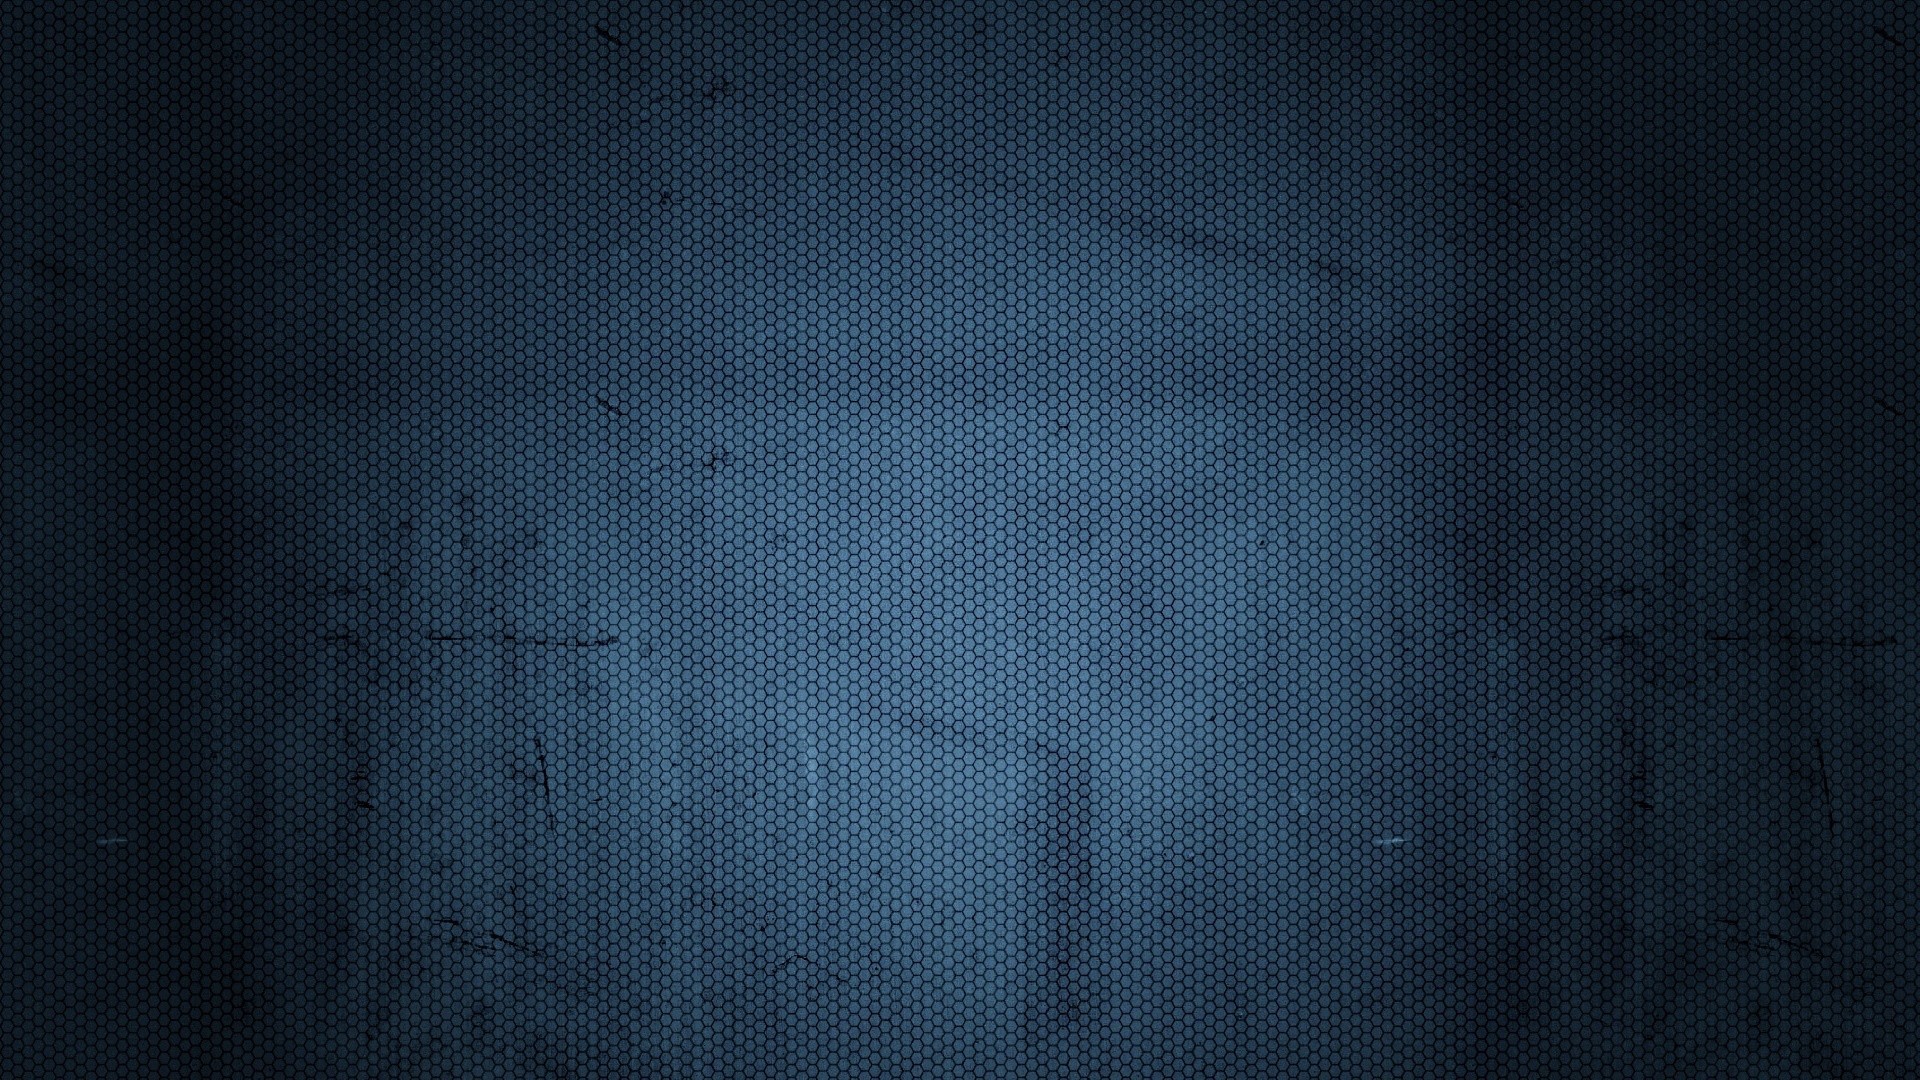 72+] Dark Blue Wallpapers - WallpaperSafari